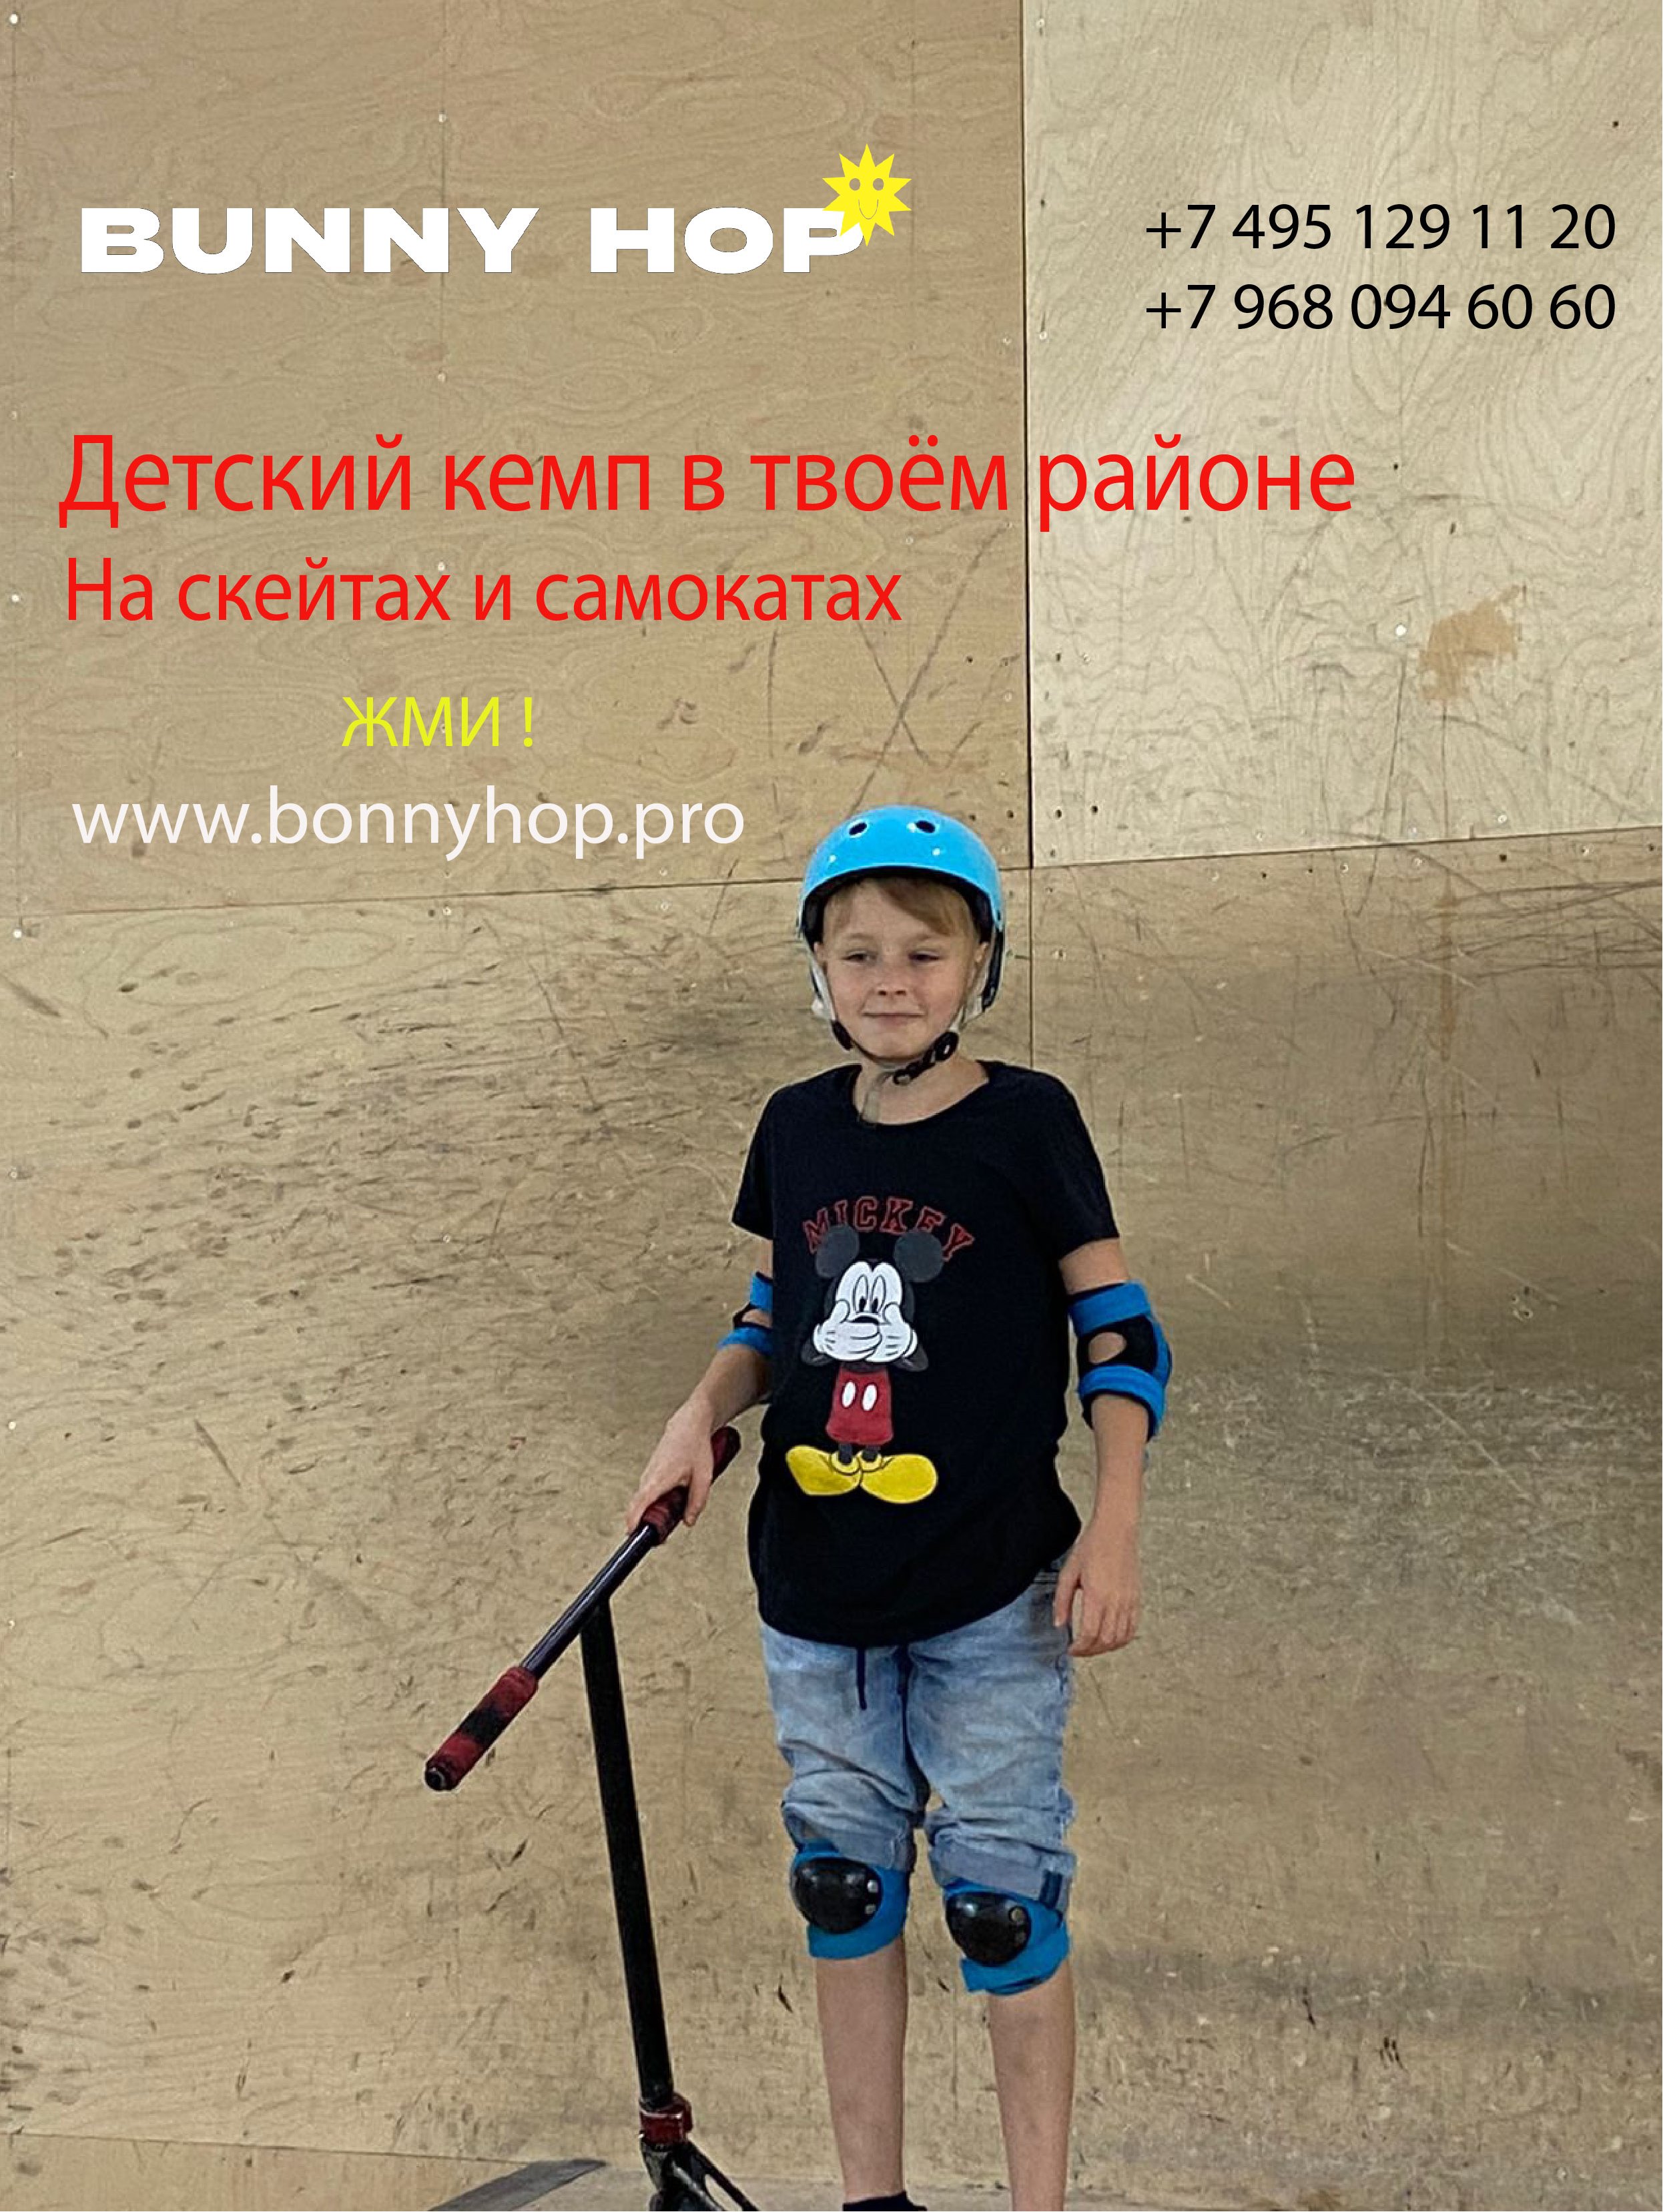 BunnyHop - Тренировки по трюковому самокату, скейтборду, BMX, роликам для детей и взрослых